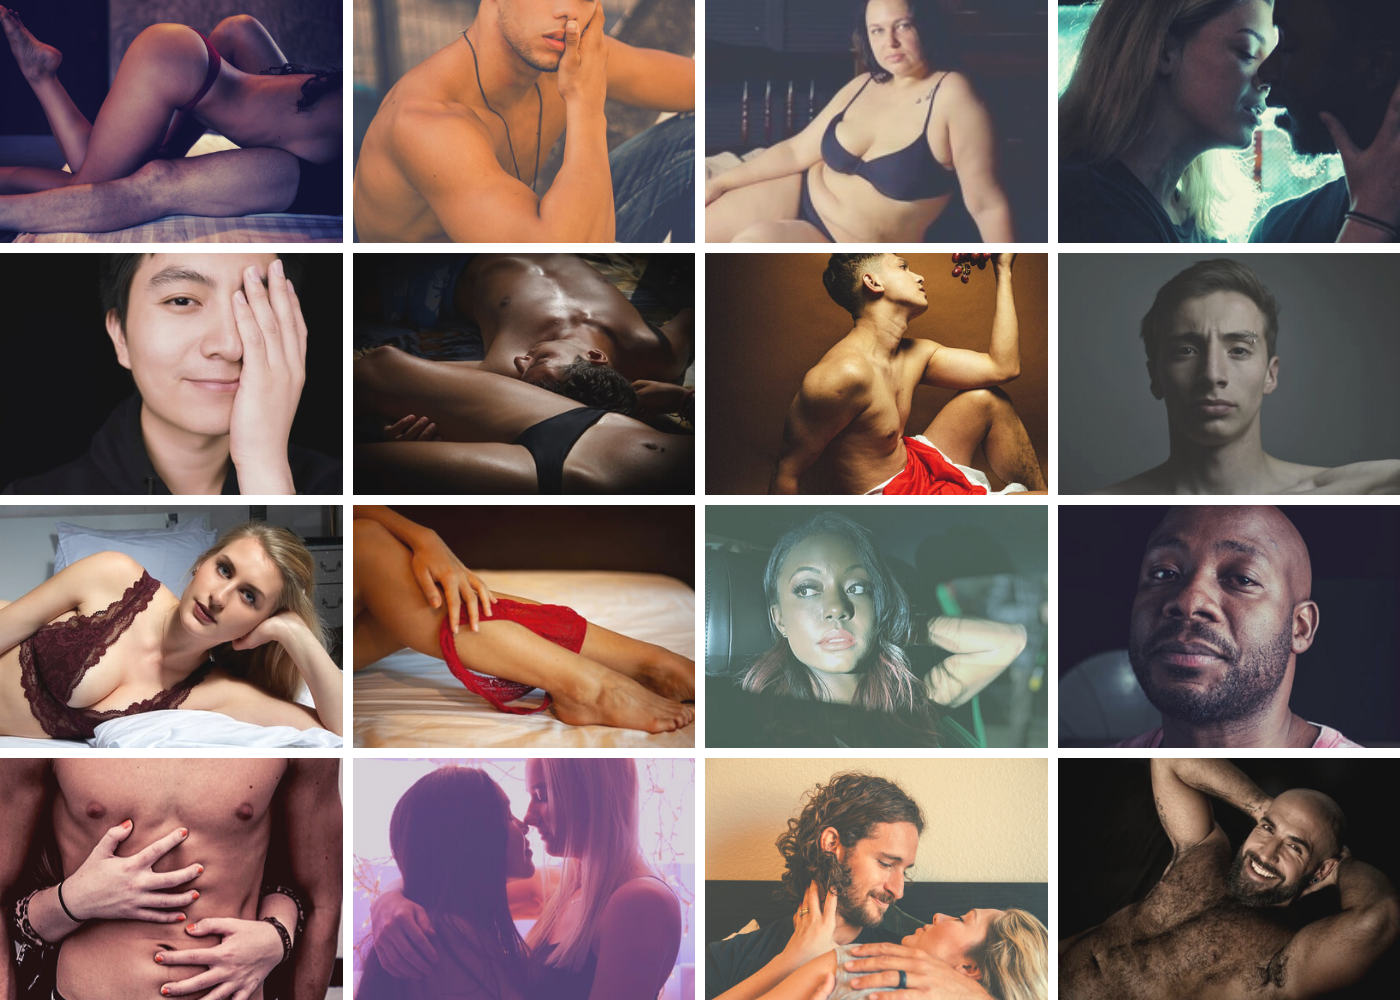 couples sex photography amateur complex Porn Photos